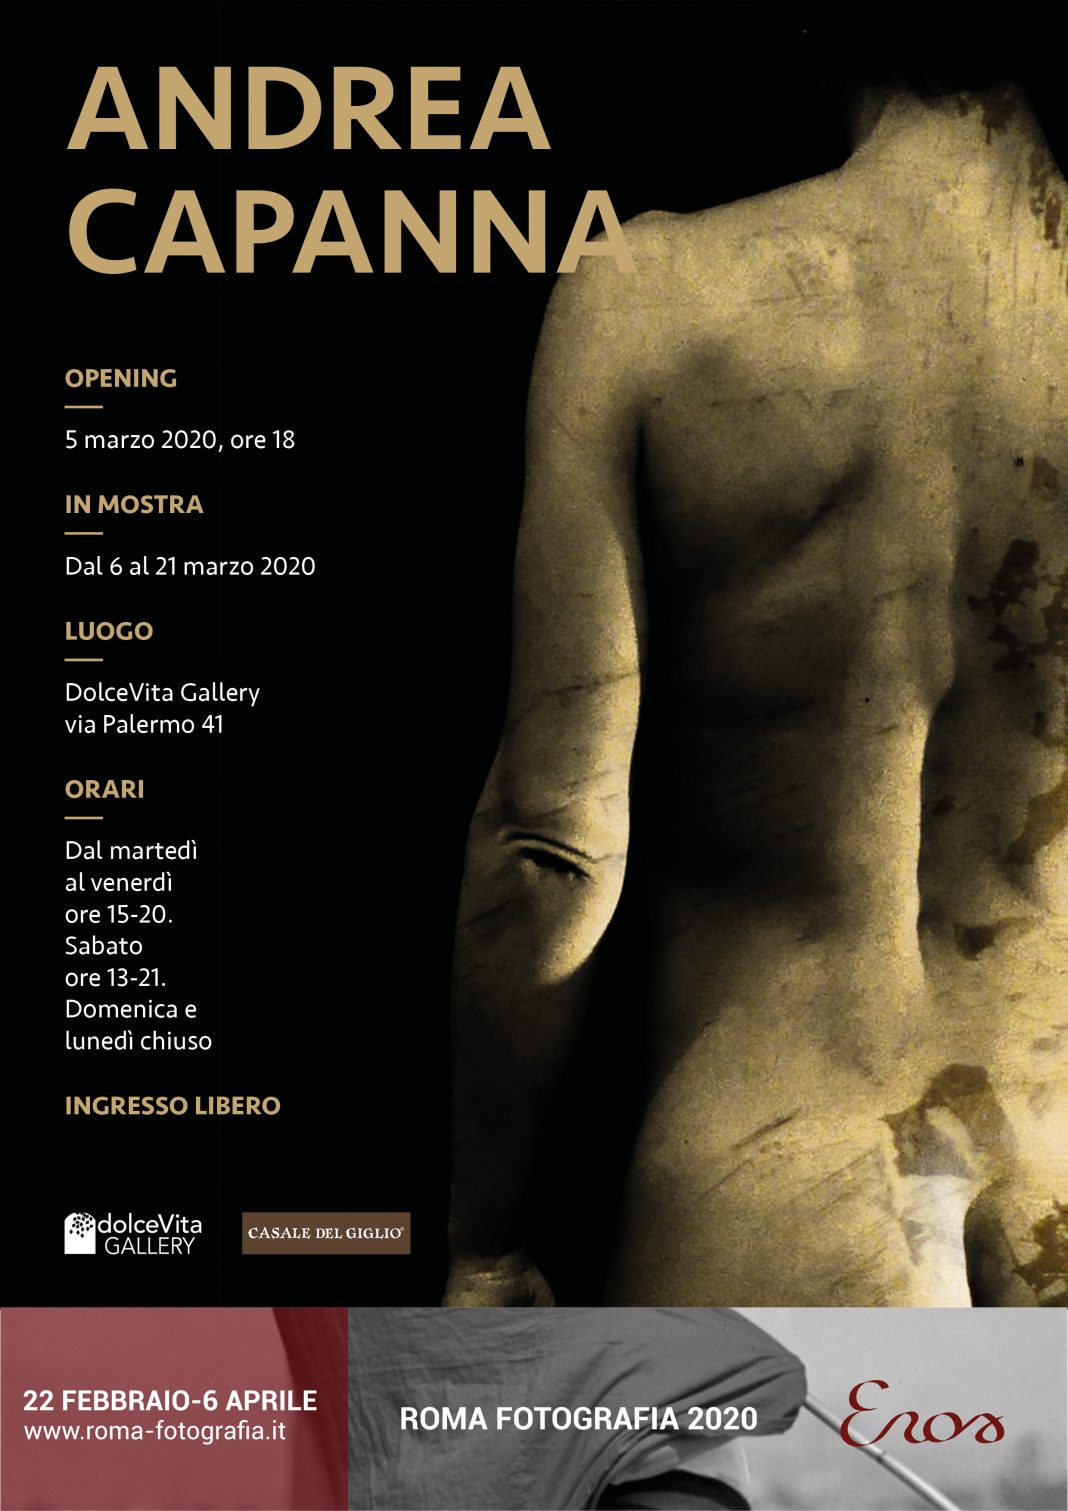 Andrea Capanna – Catalogo eroticohttps://www.exibart.com/repository/media/formidable/11/Locandina-5-marzo-1068x1511.jpg